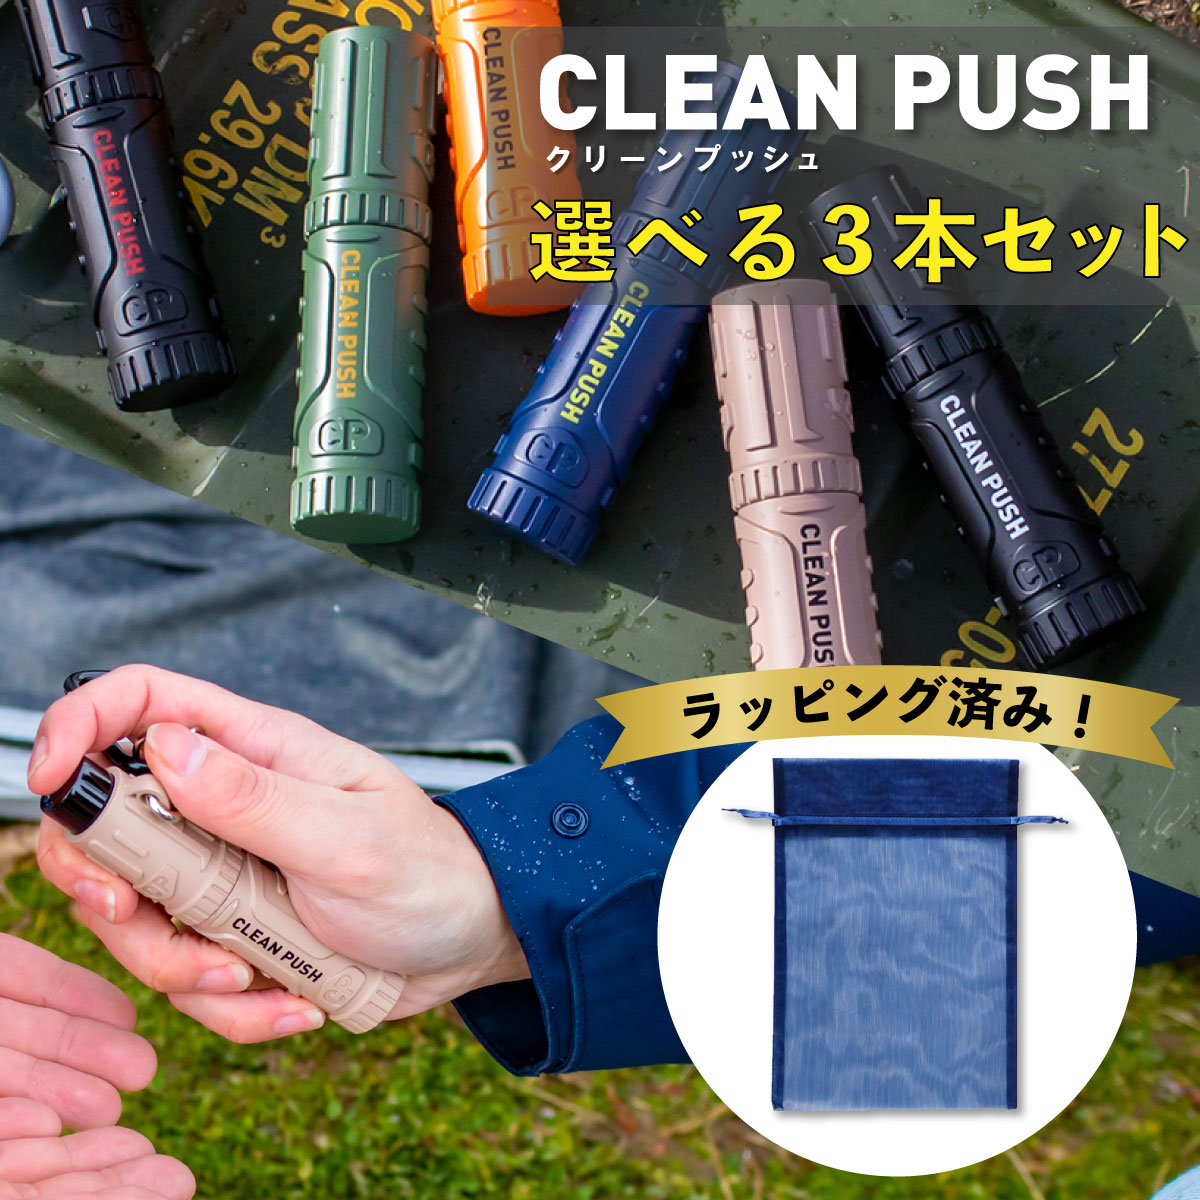  アウトドアタイプ Clean Push クリーンプッシュ キャップ不要 携帯ボトル ハンディ除菌 消毒スプレー